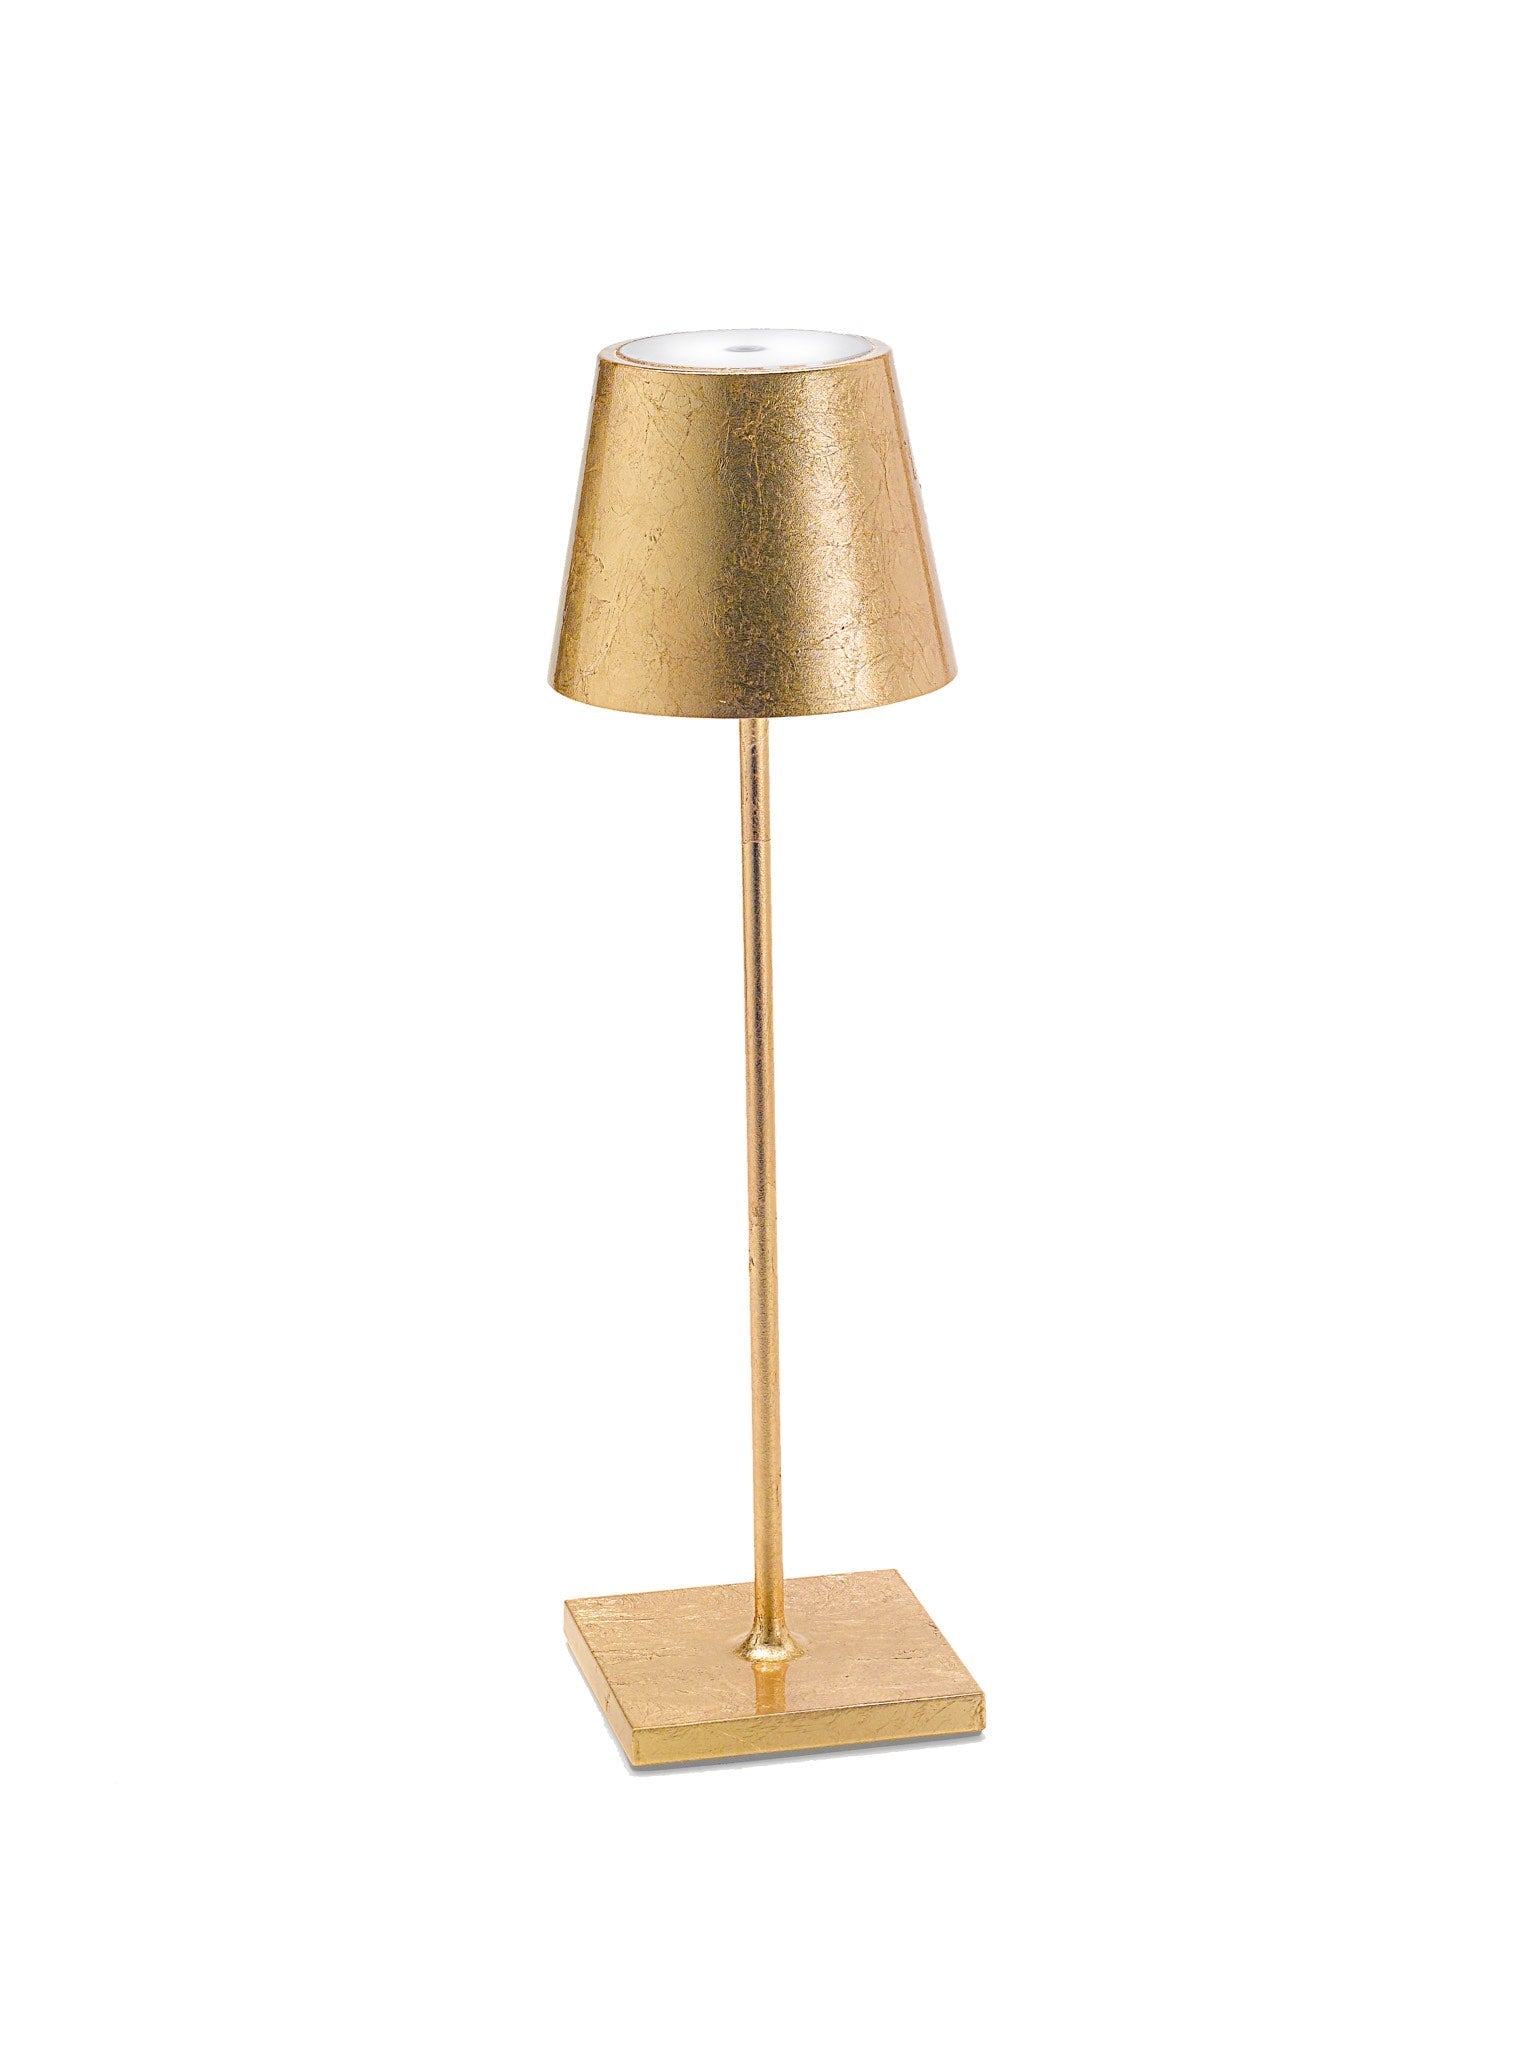 Poldina L desk table lamp